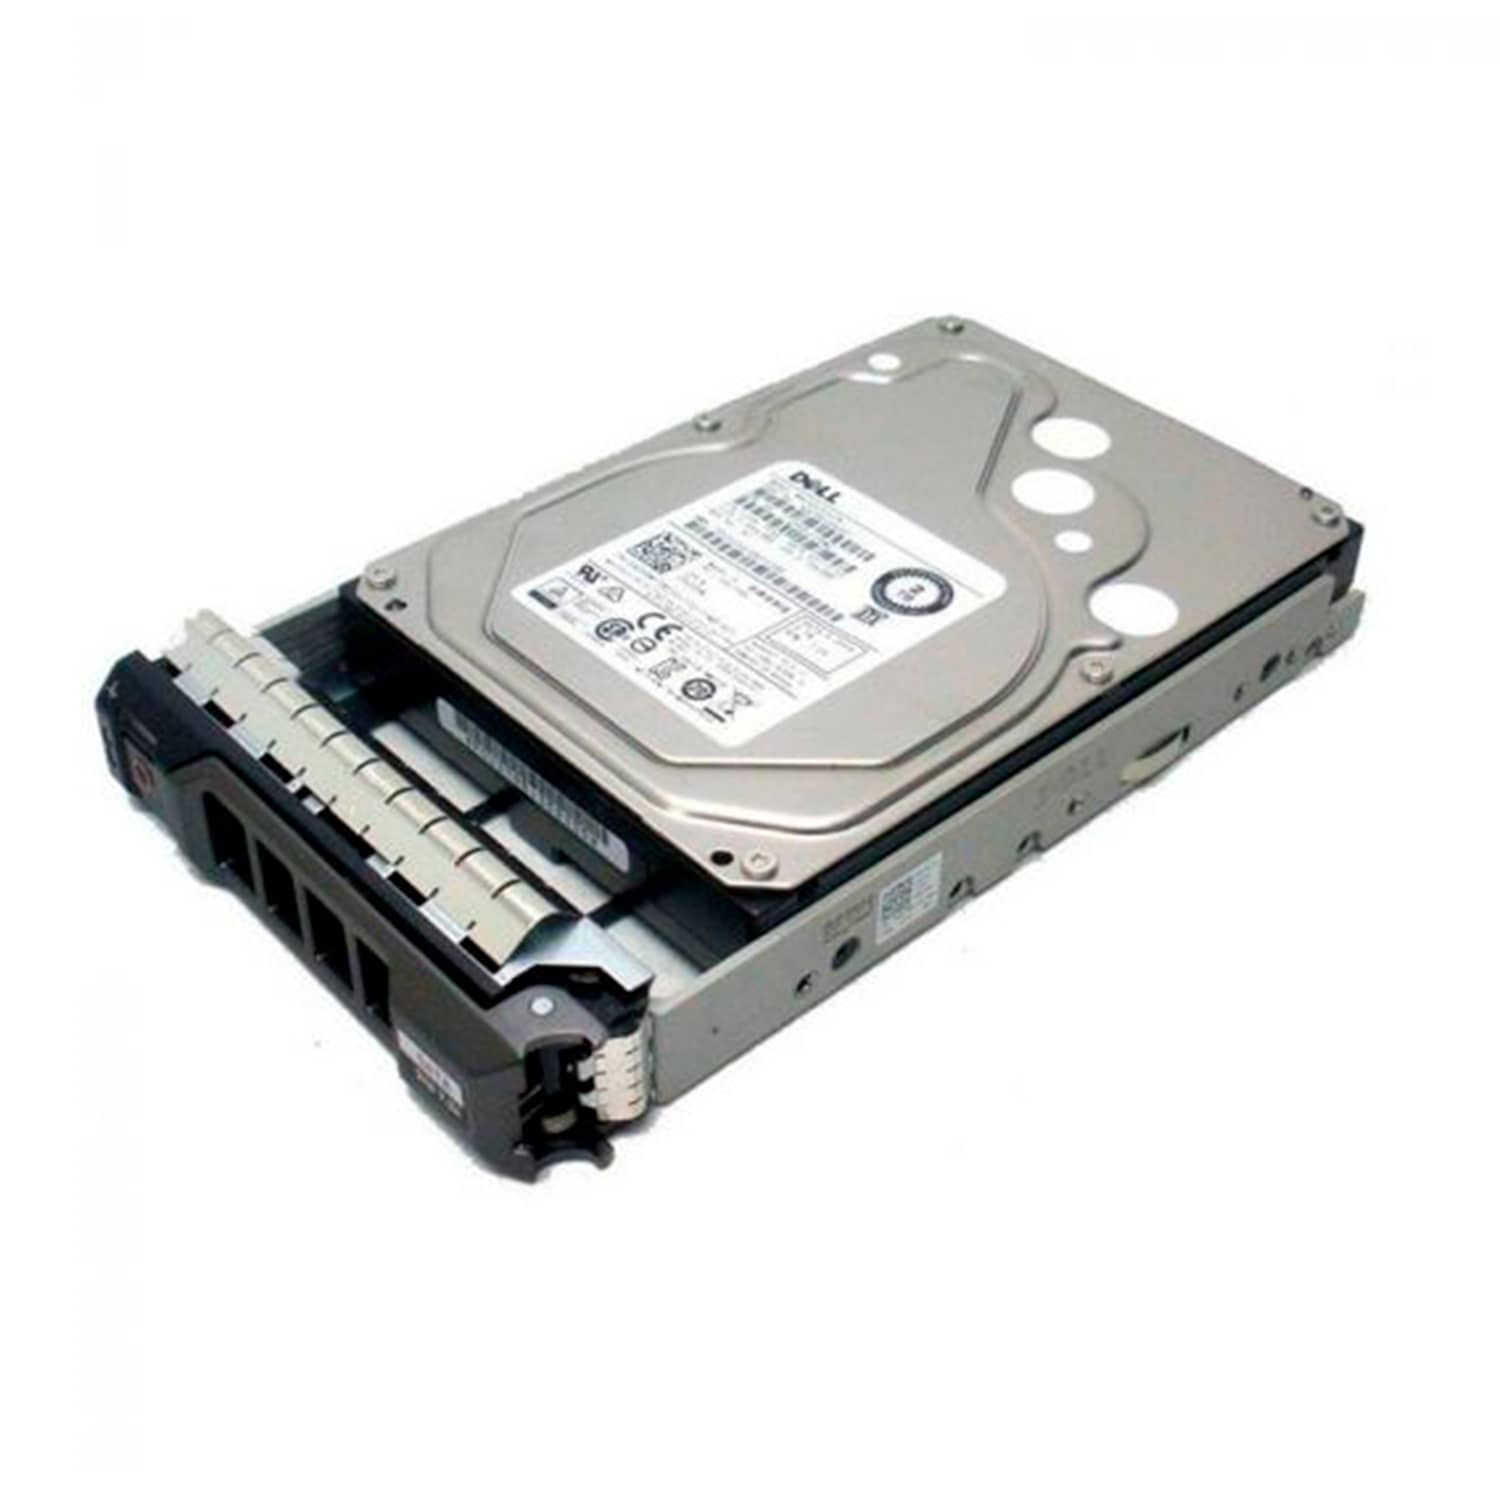 Dell - Hard drive - Internal hard drive - 2 TB - 3.5" - HotPlug T 350/550 - DELL